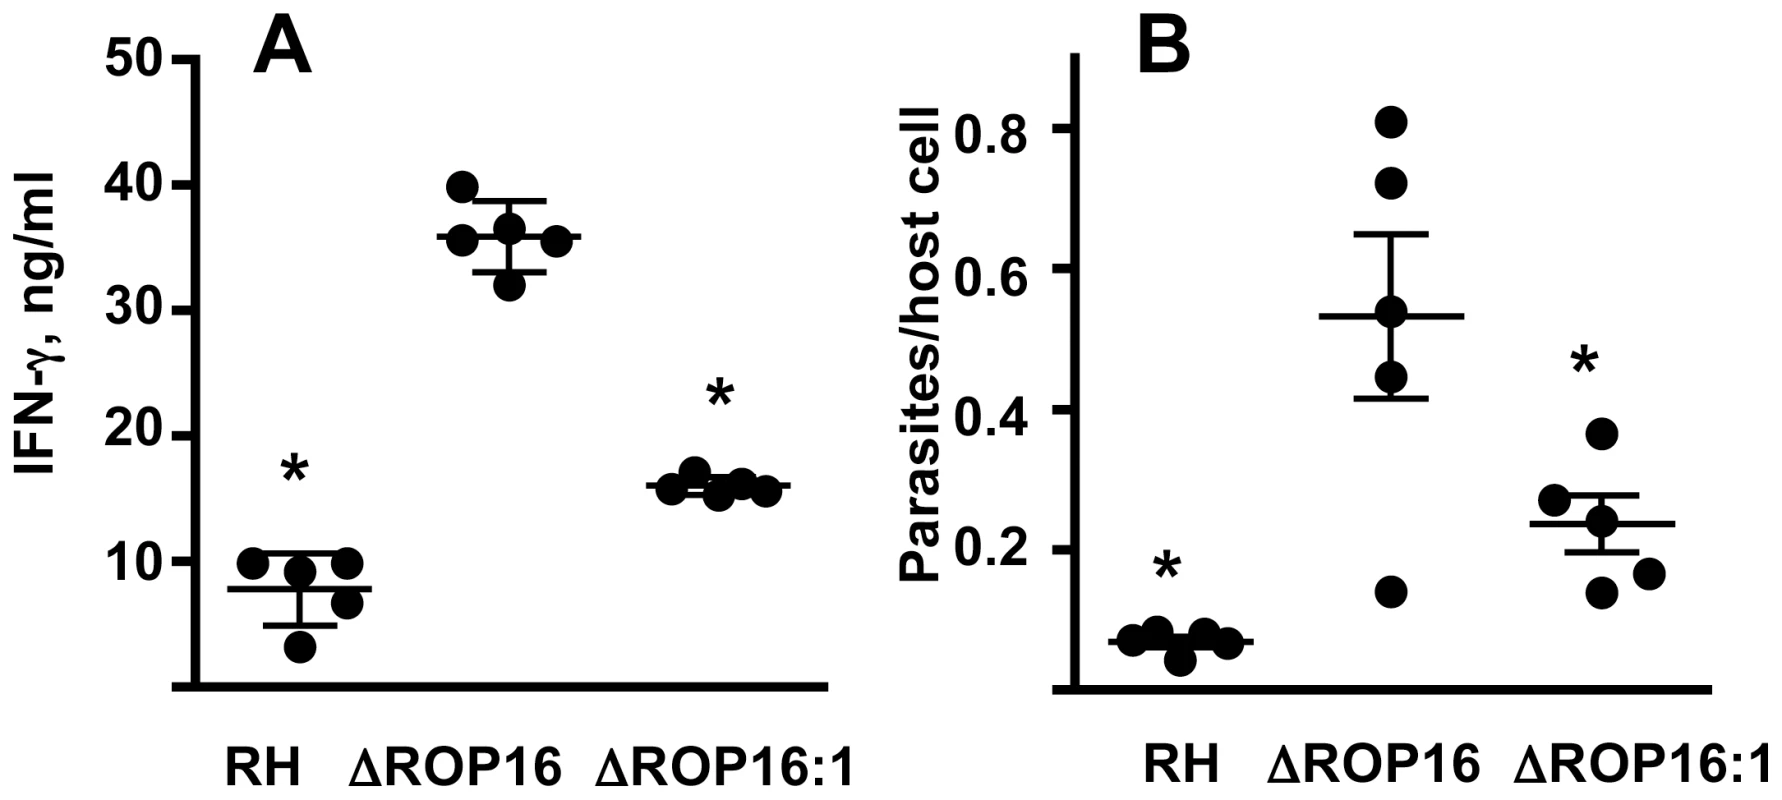 ΔROP16 infection induces high-level IFN-γ production in spleen.